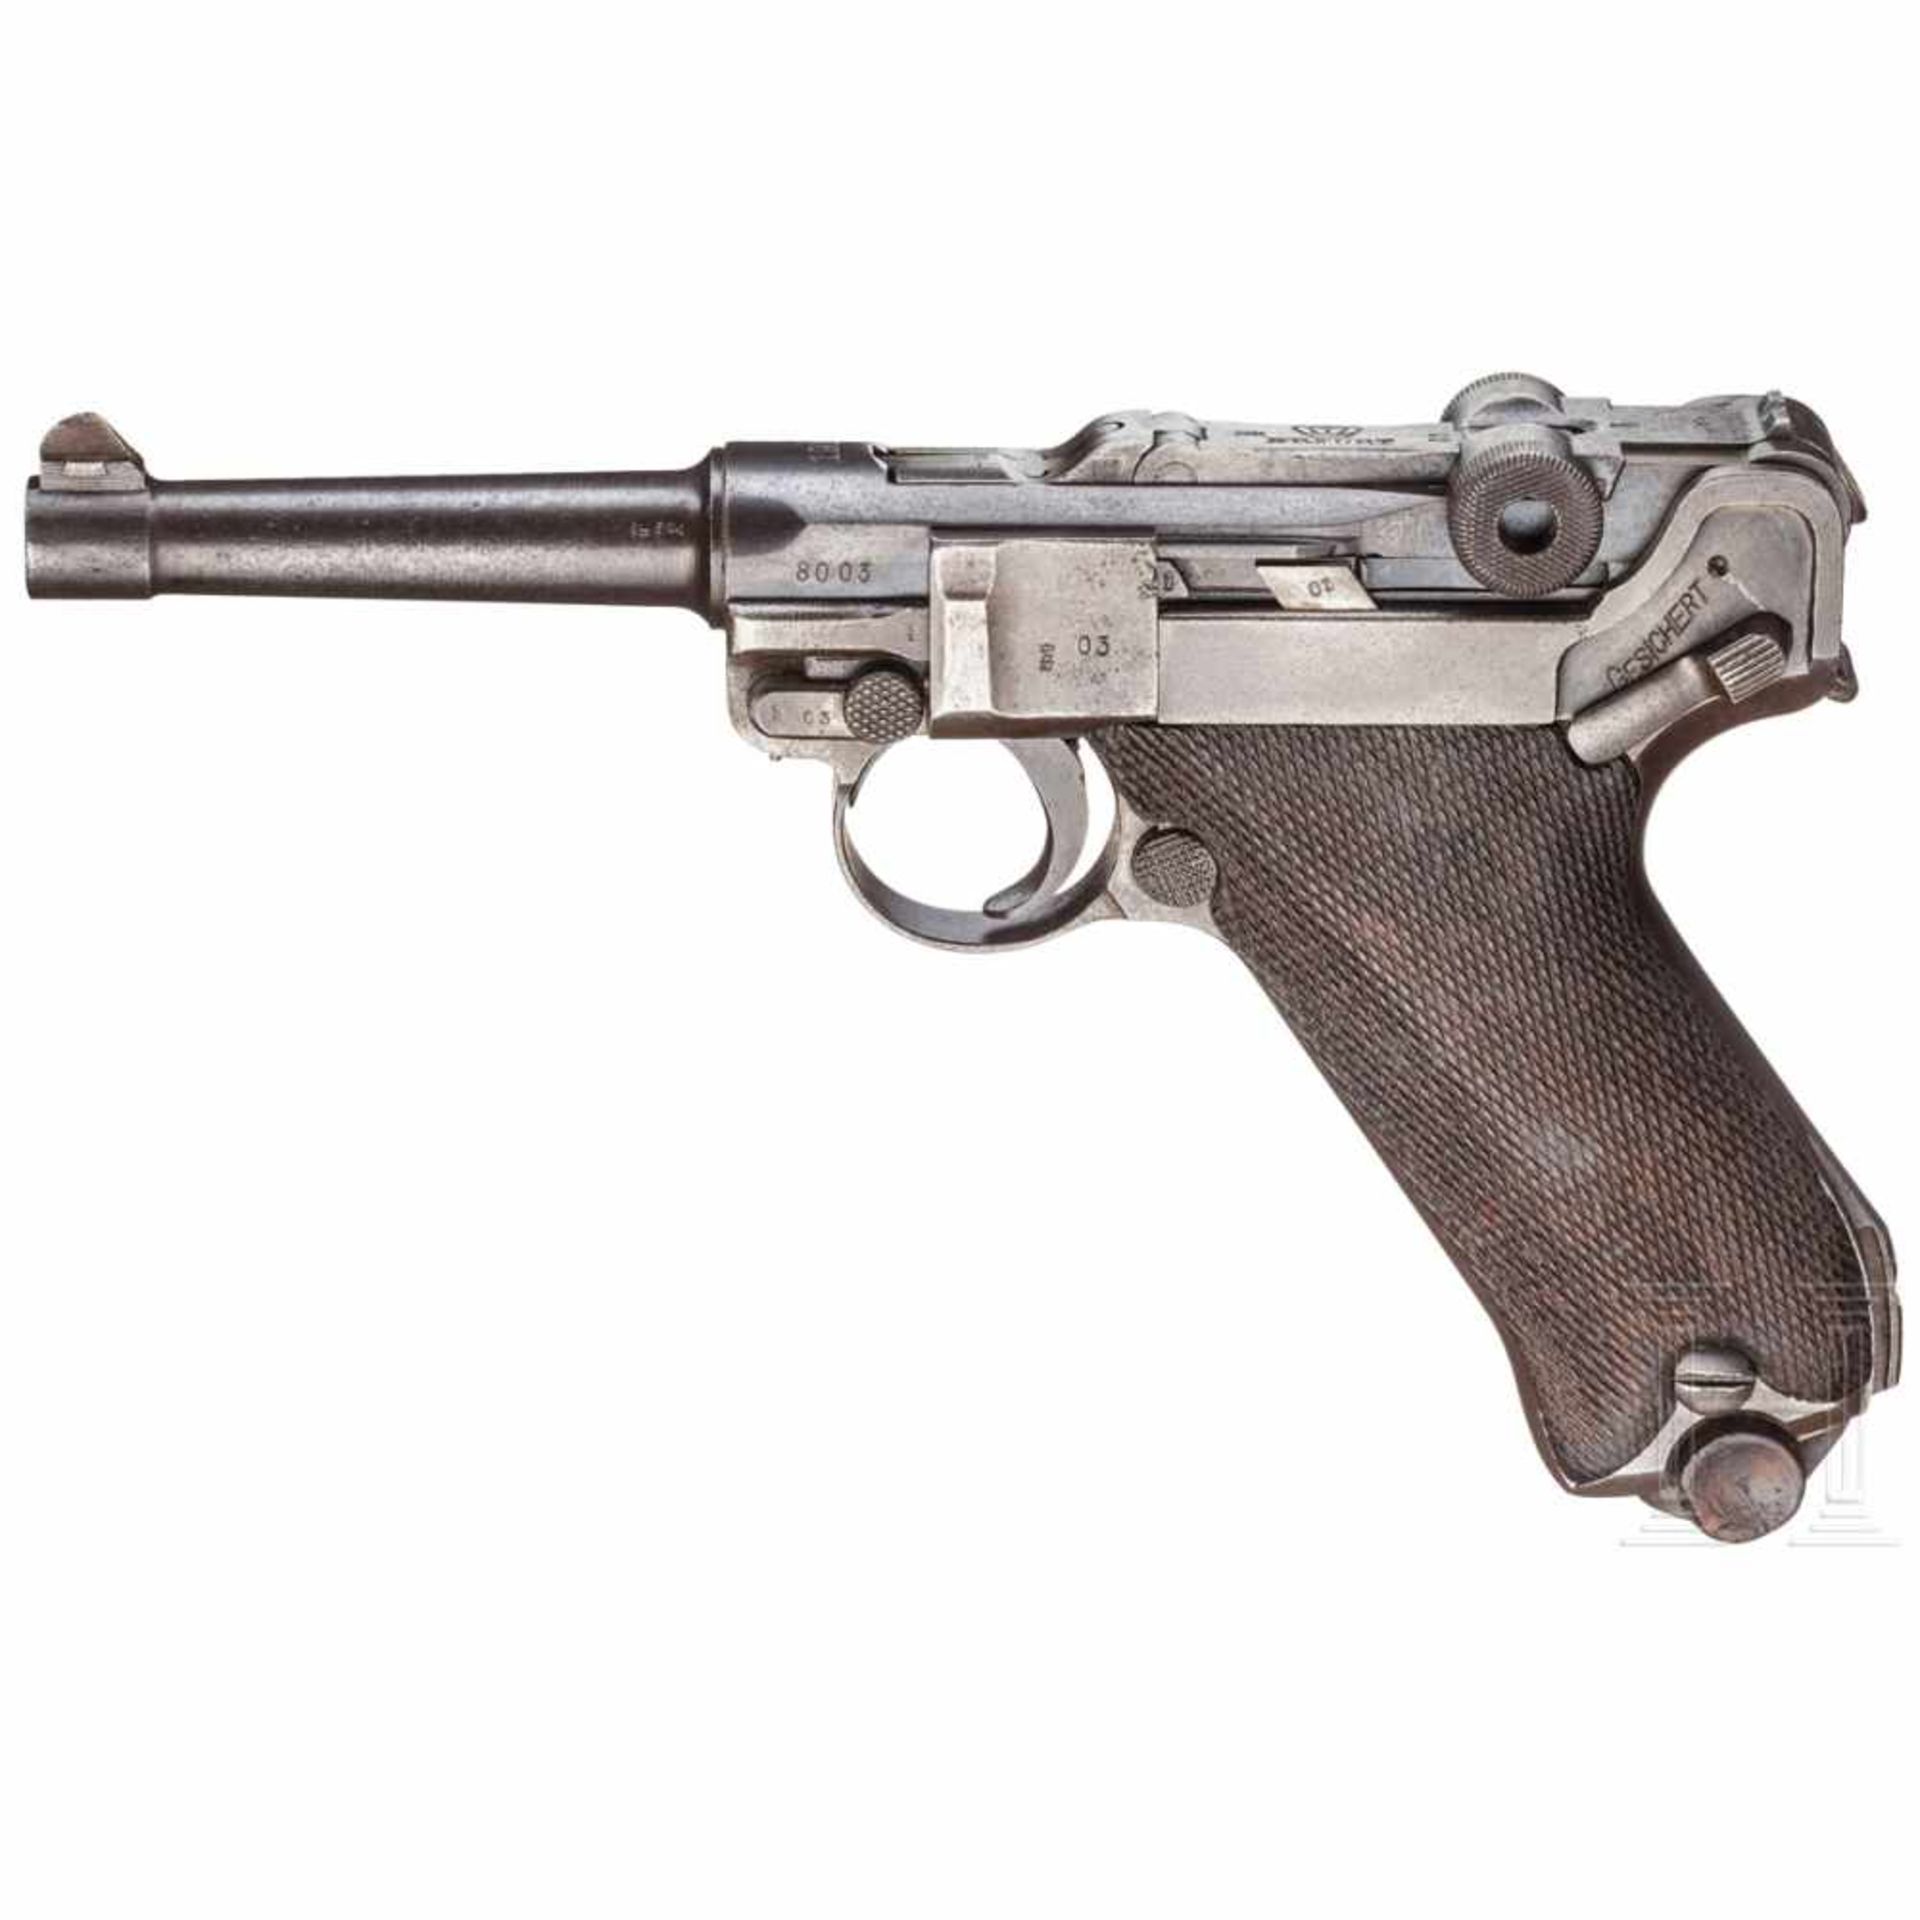 Pistole 08, Erfurt 1916Kal. 9 mm Luger, Nr. 8003d, Nummerngleich inkl. Schlagbolzen und